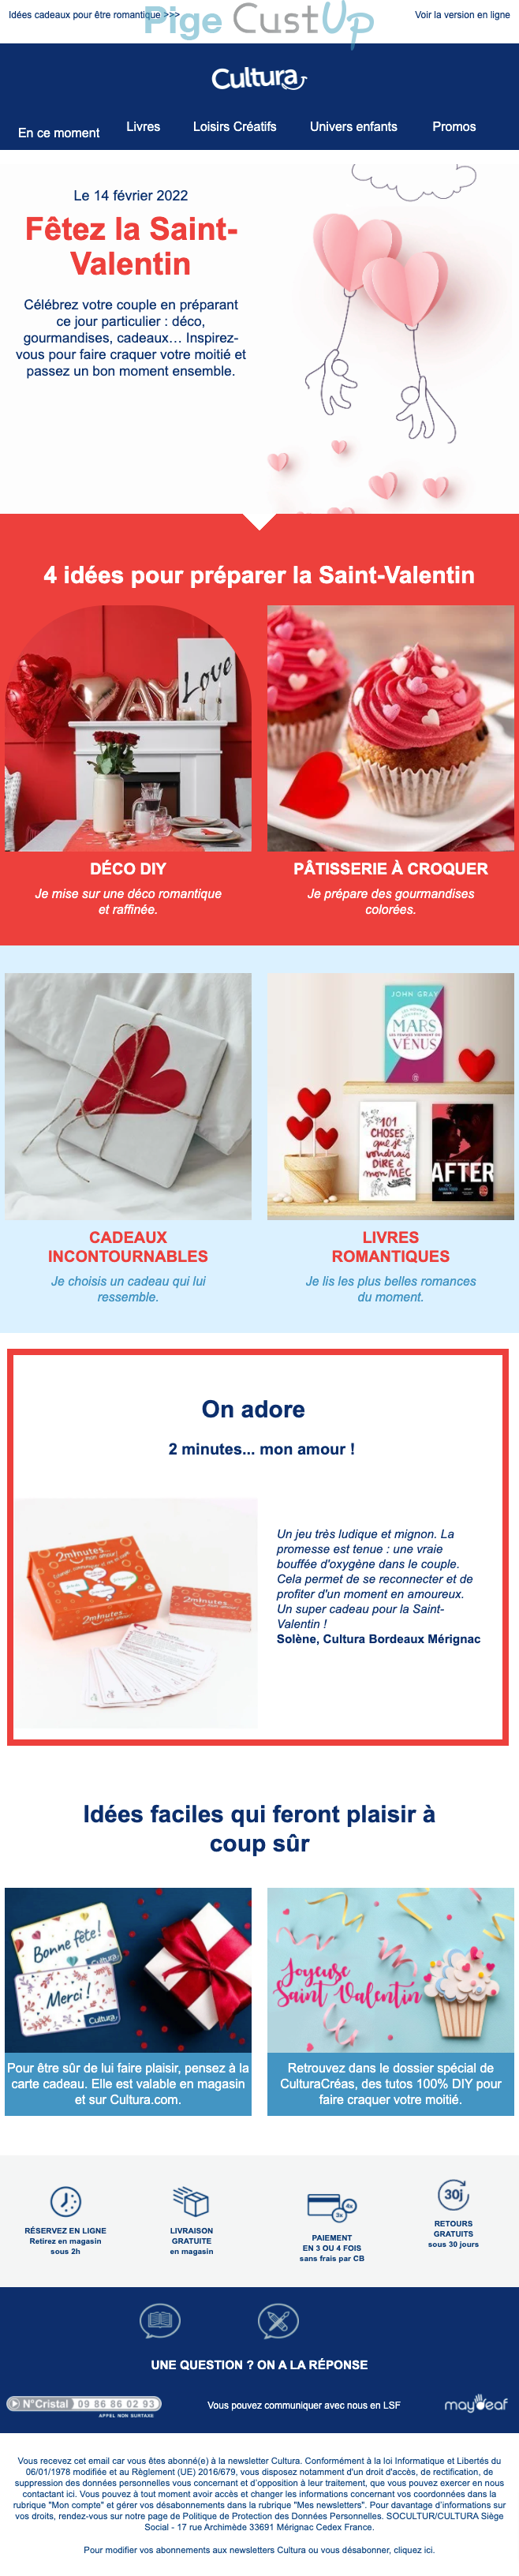 Exemple de Type de media   - Cultura - Marketing relationnel - Calendaire (Noël, St valentin, Vœux, …)